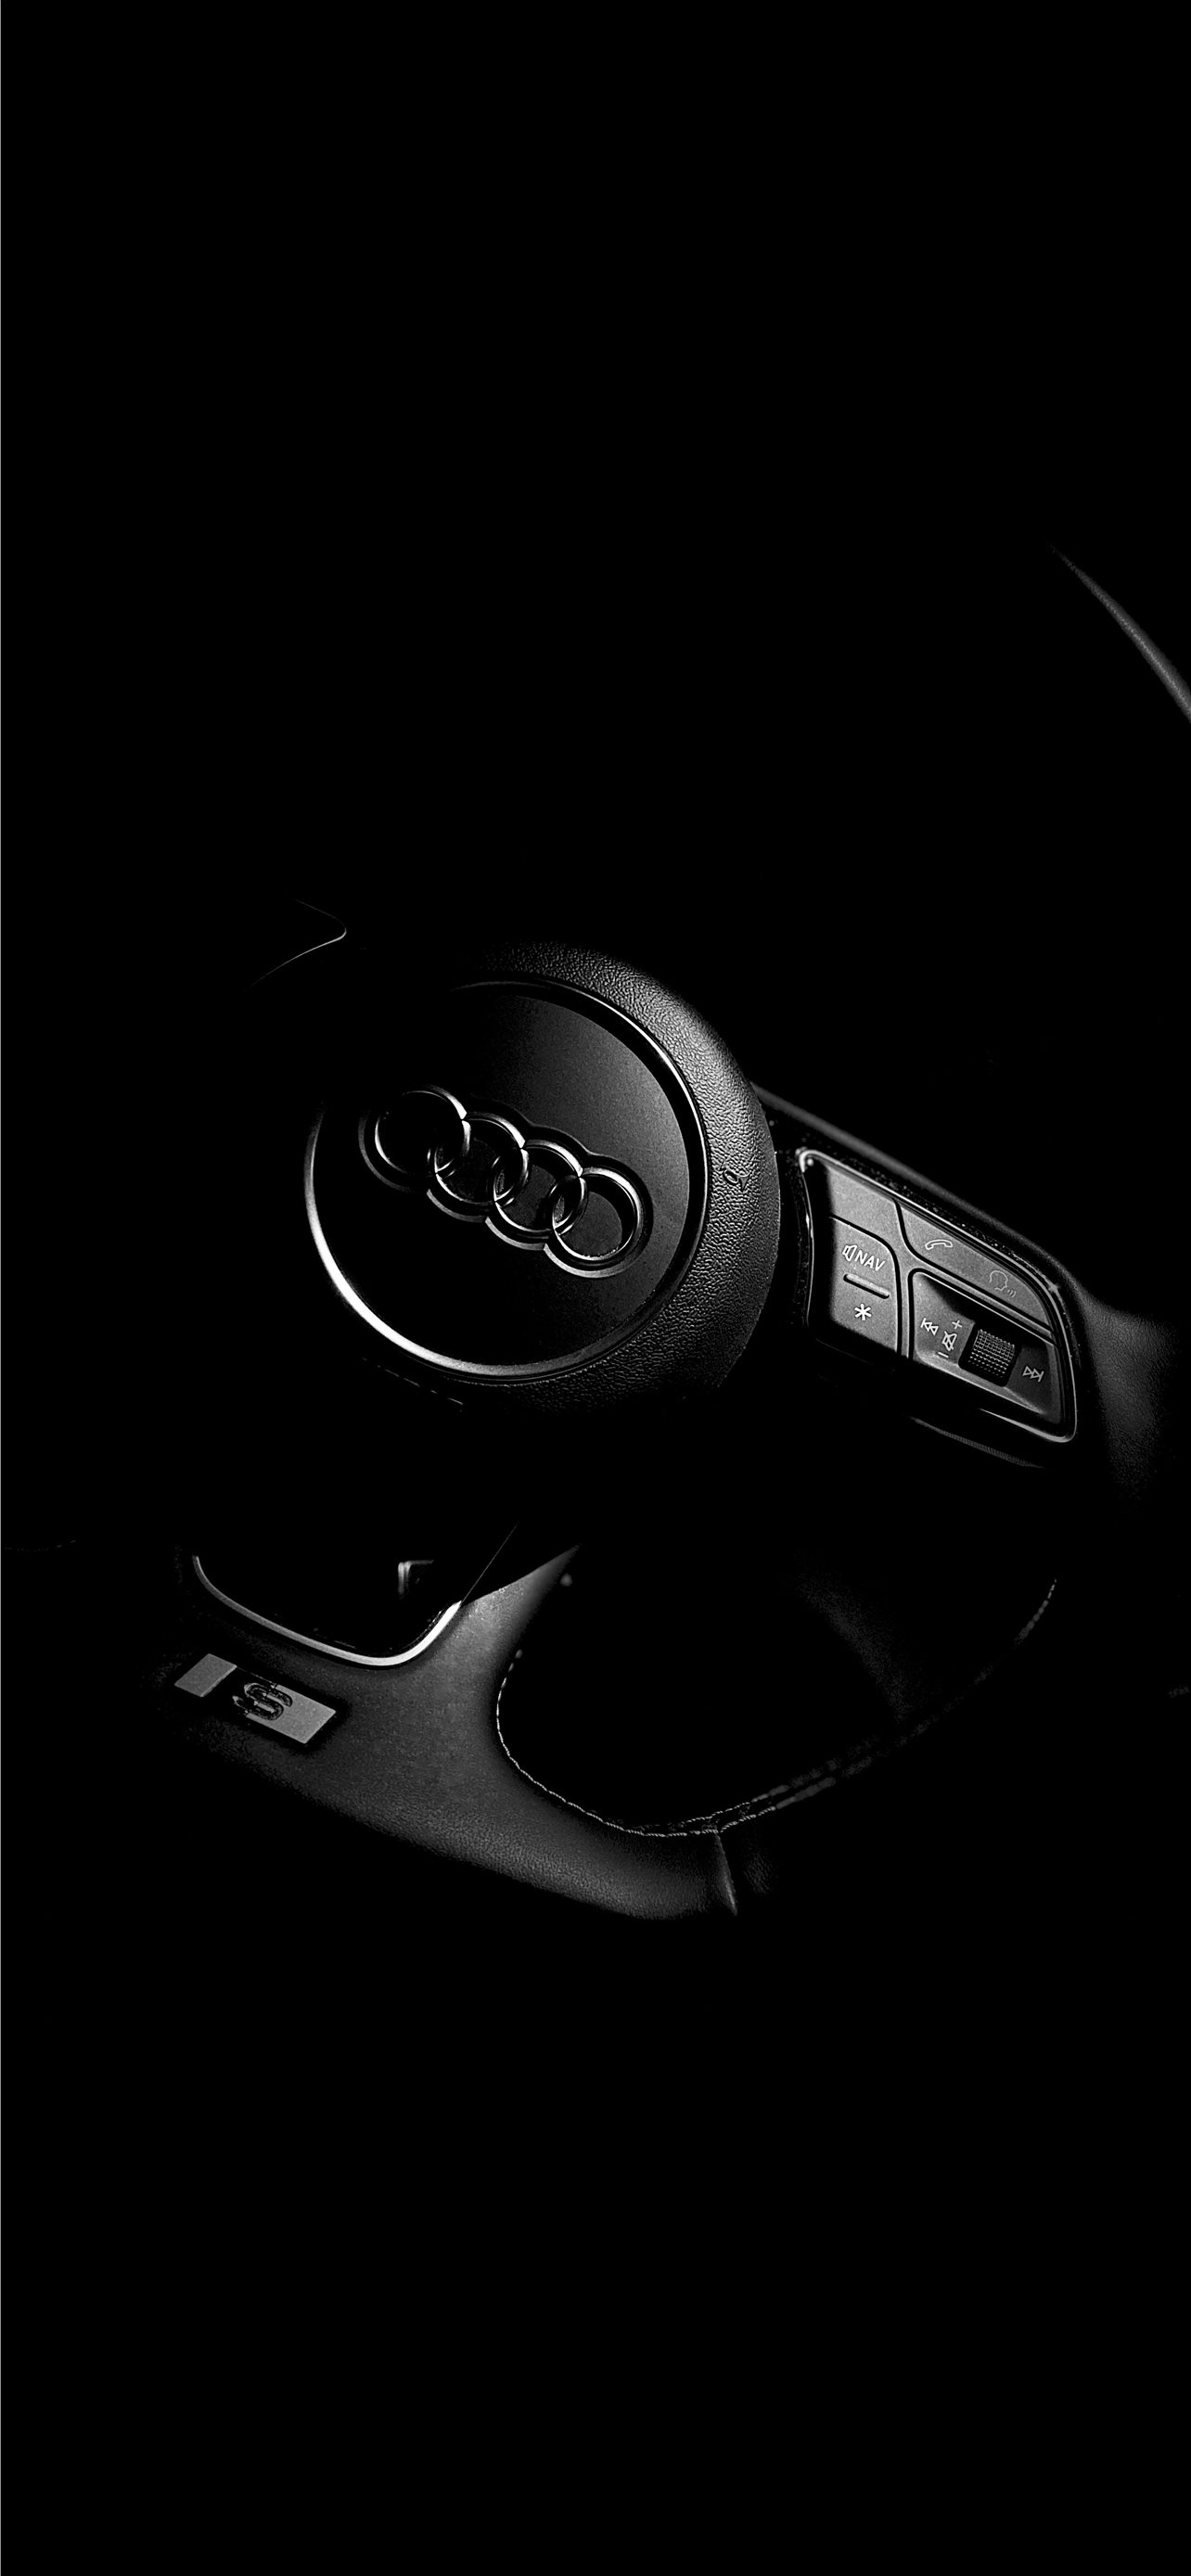 Audi s3 HD wallpapers | Pxfuel